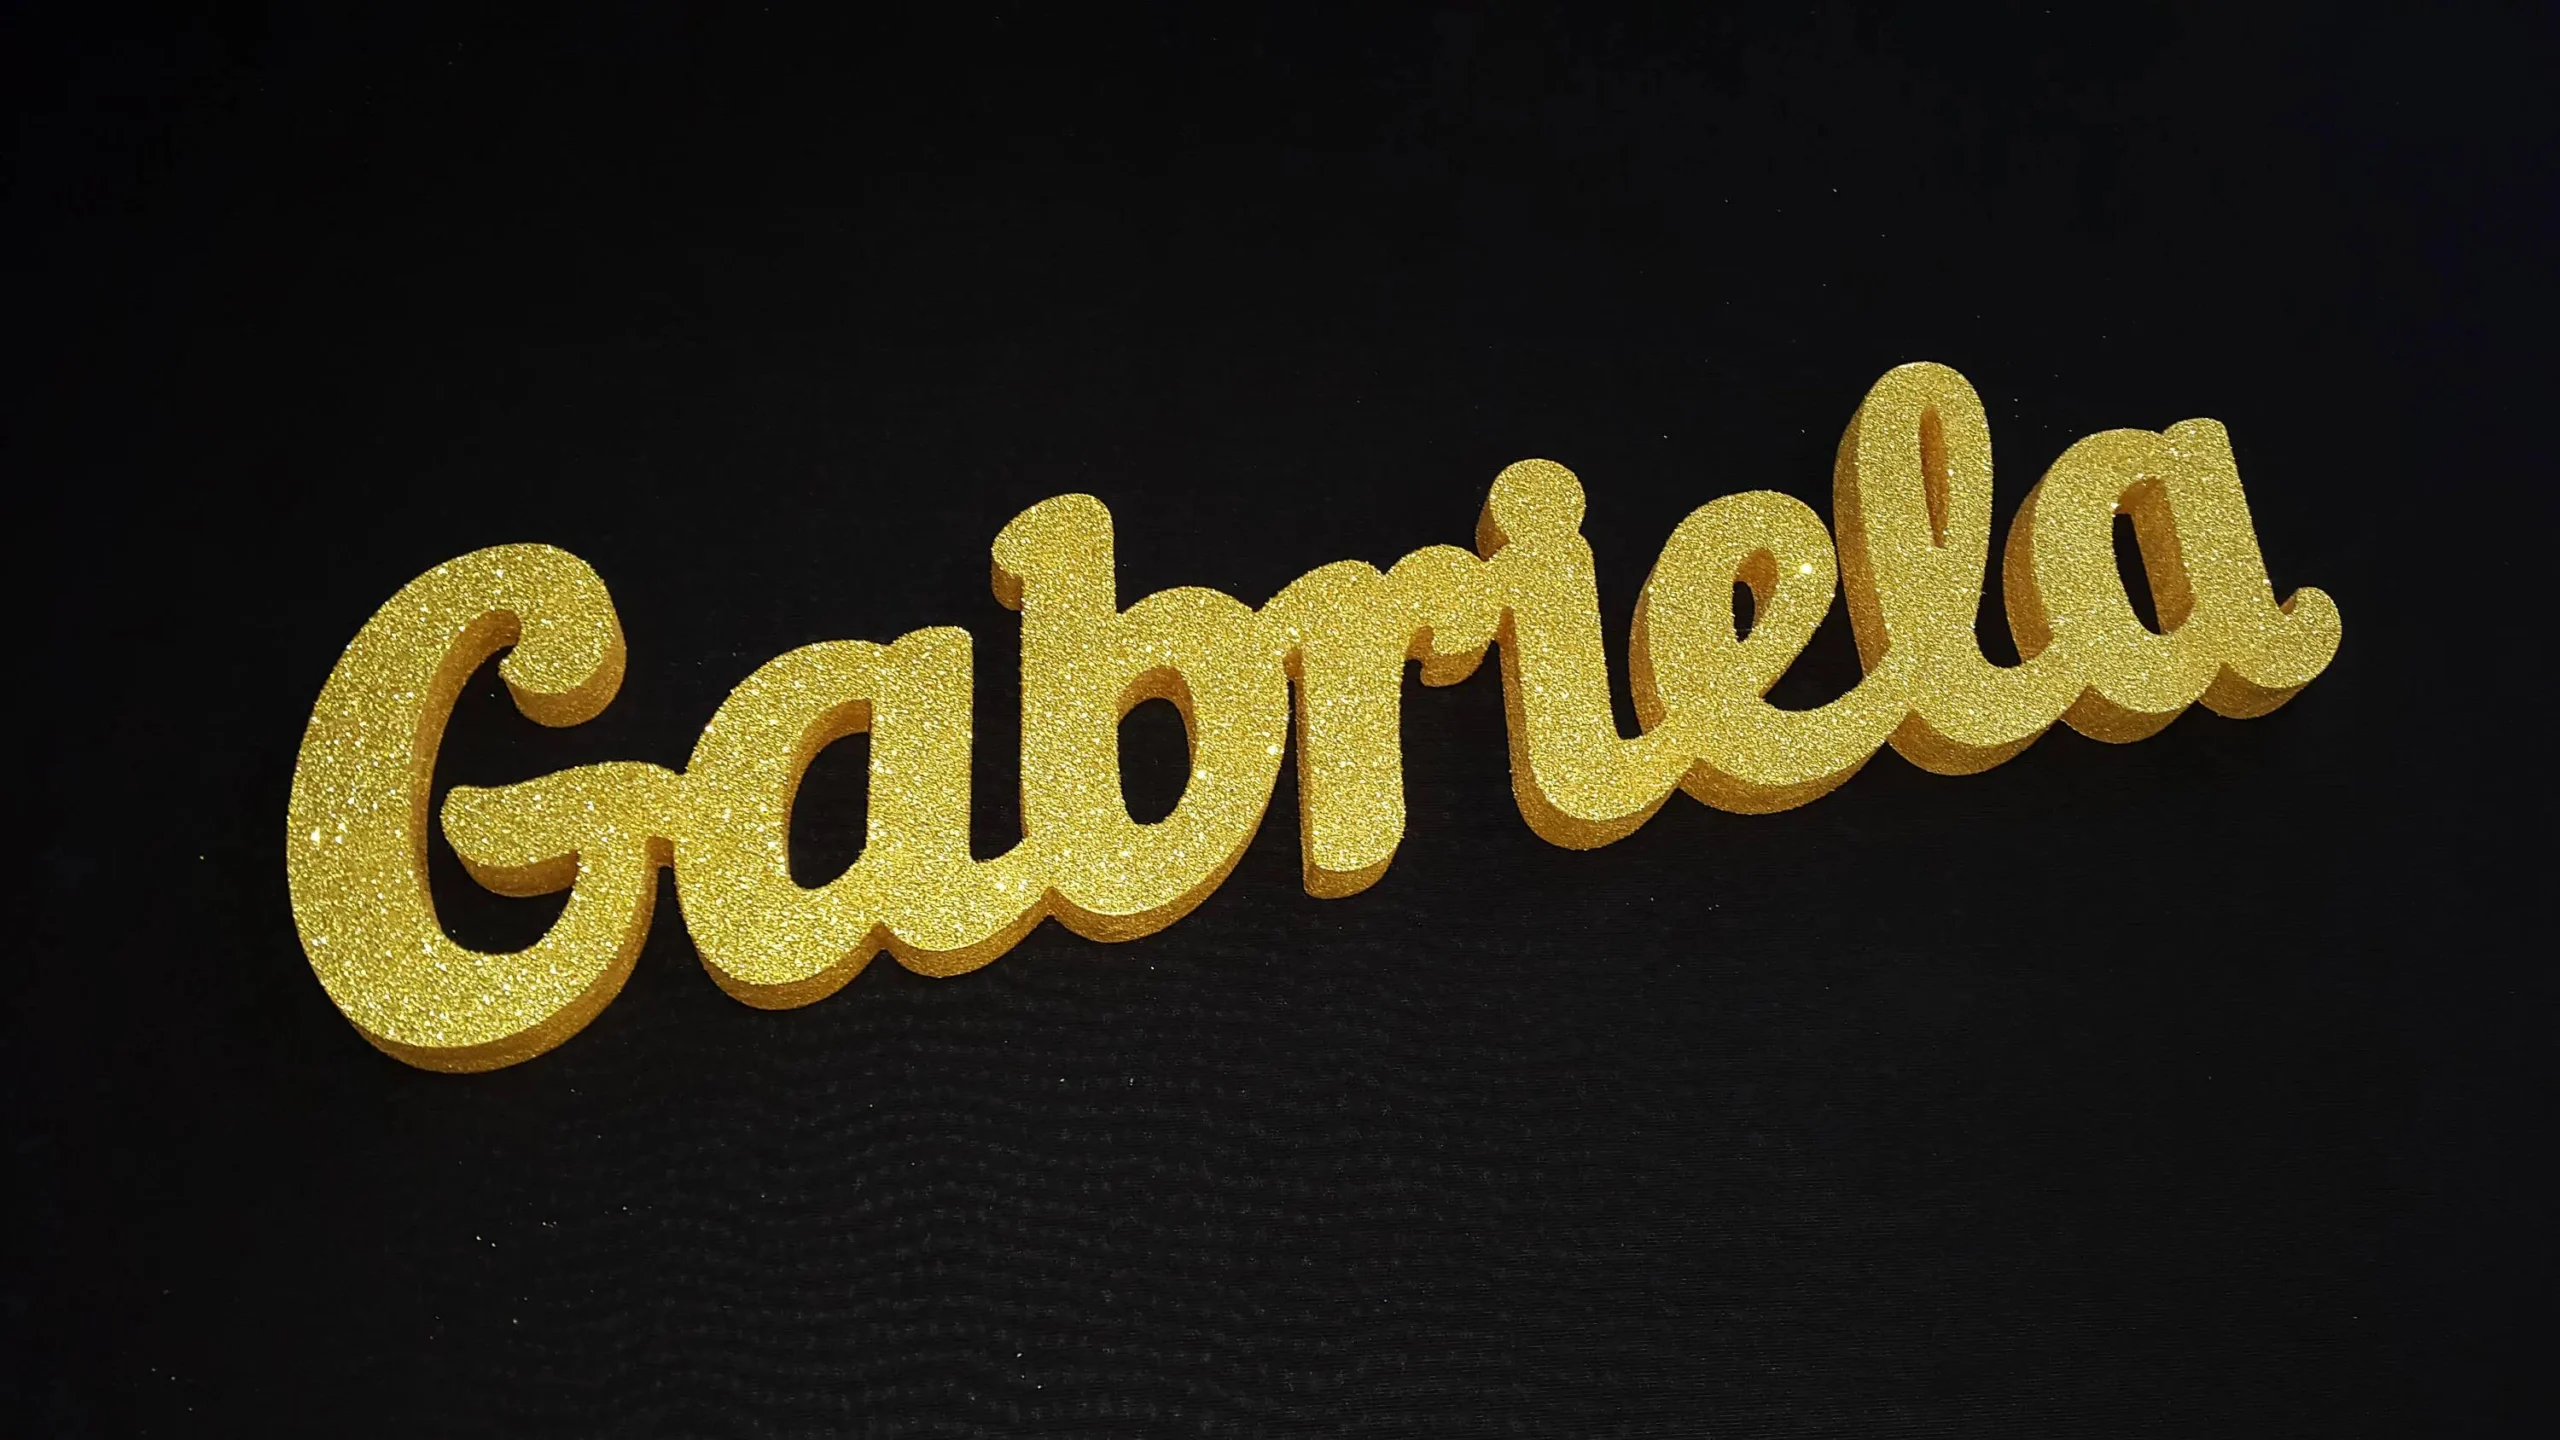 gabriela gold - Quién es Gaby Golden